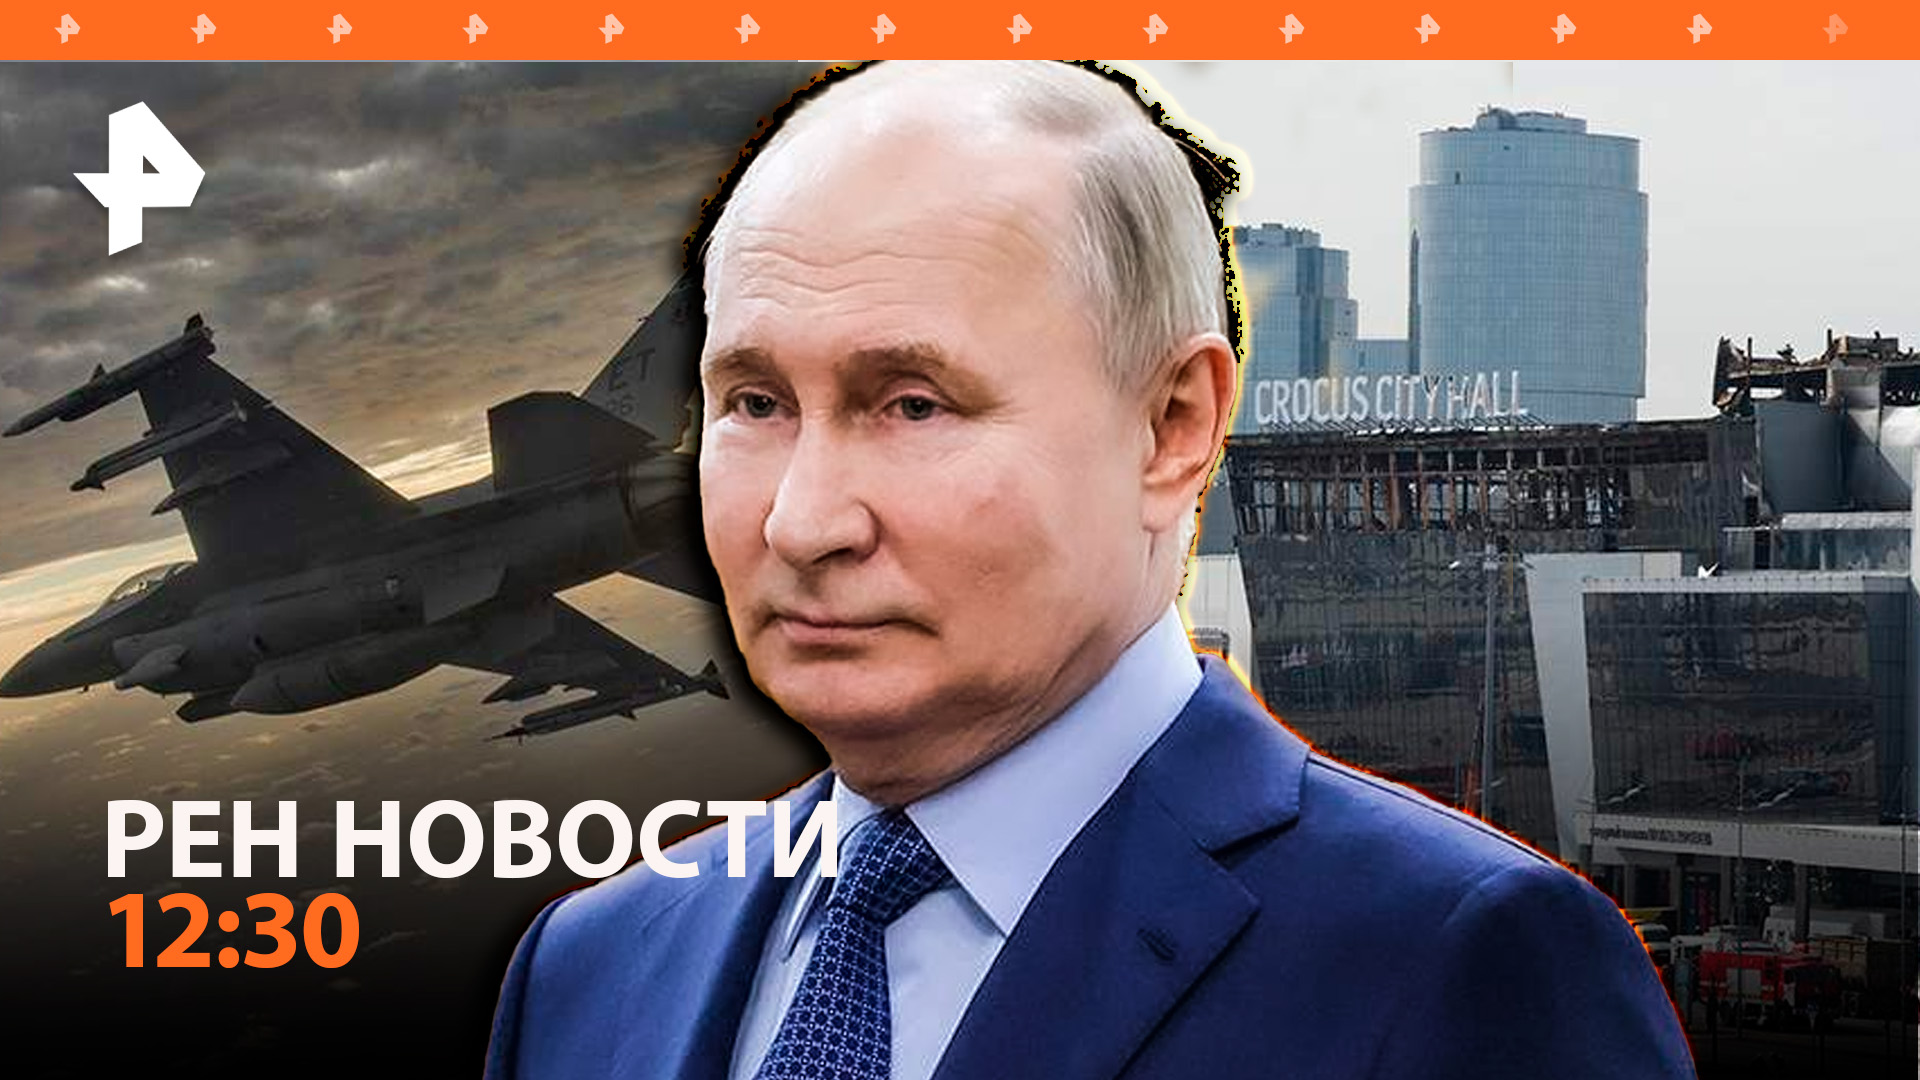 Число погибших в "Крокусе" выросло до 143 / Путин — о судьбе F-16 на СВО / РЕН Новости 28.03, 12:30